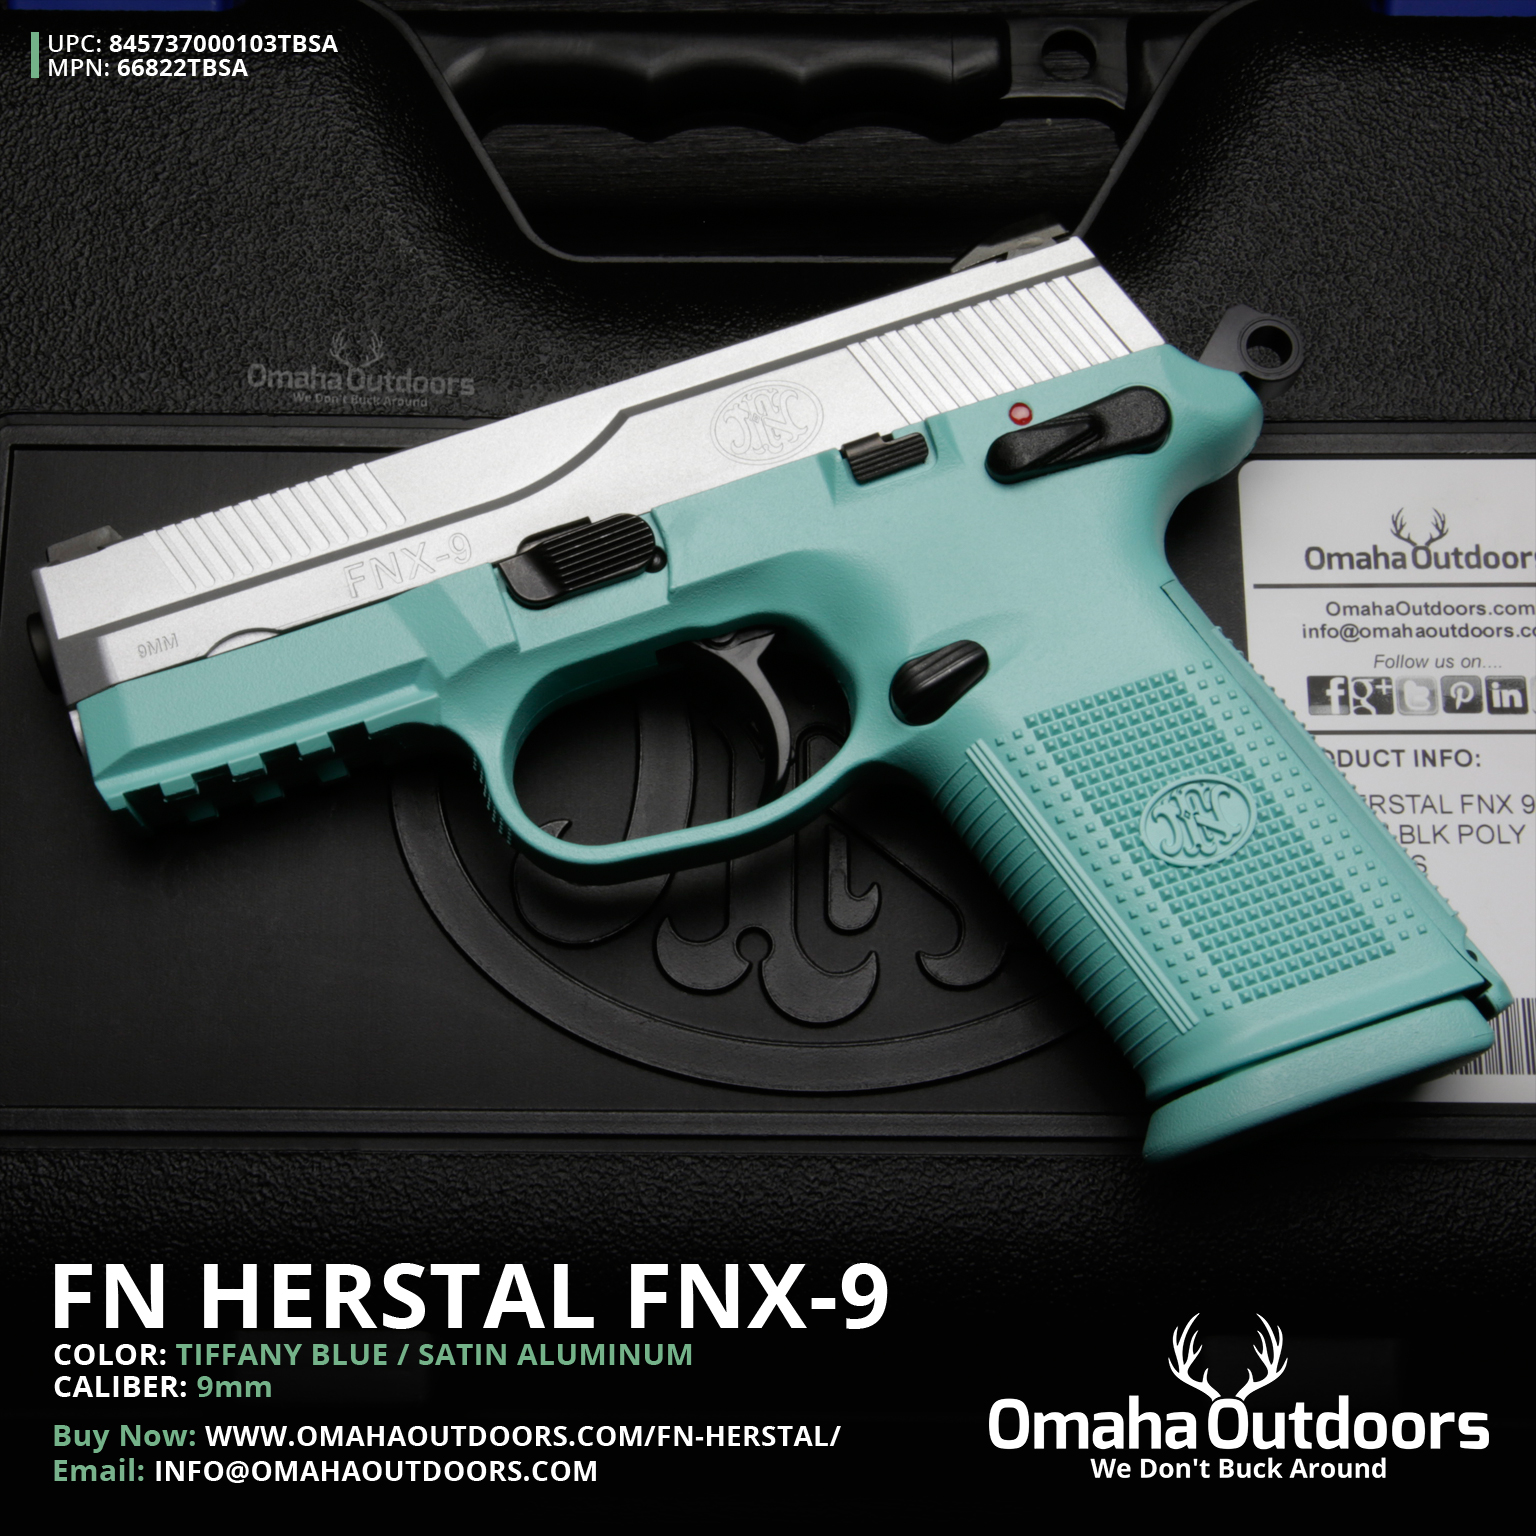 HQ FN Herstal Pistol Wallpapers | File 1241.21Kb